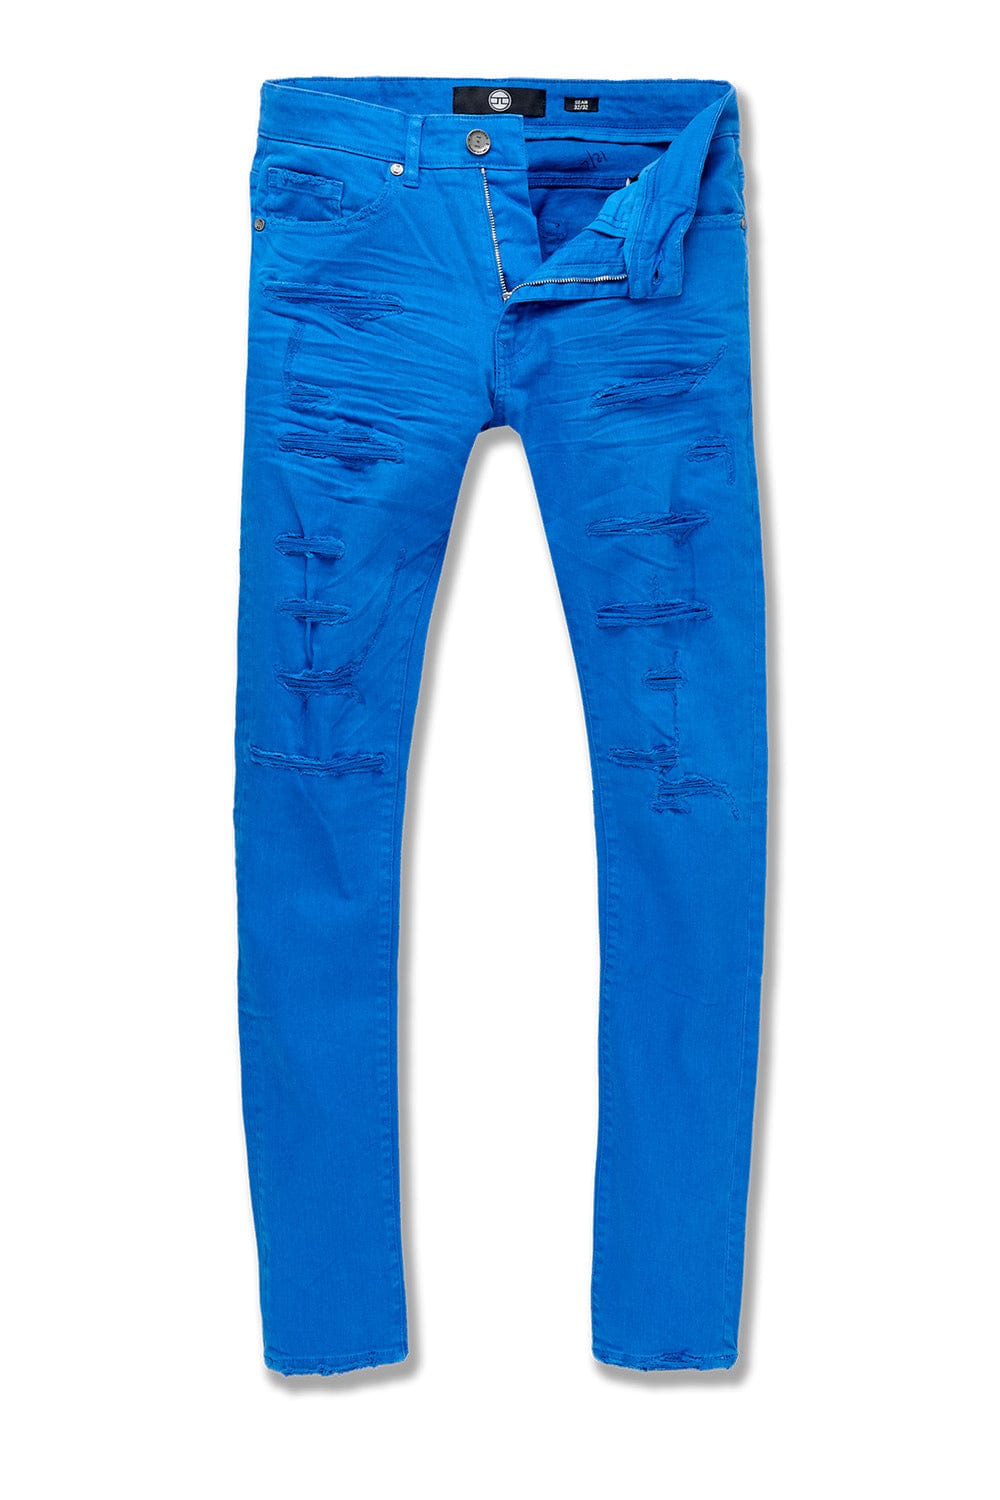 Jordan Craig Ross - Tribeca Twill Pants (Exclusive Colors) Royal / 28/32